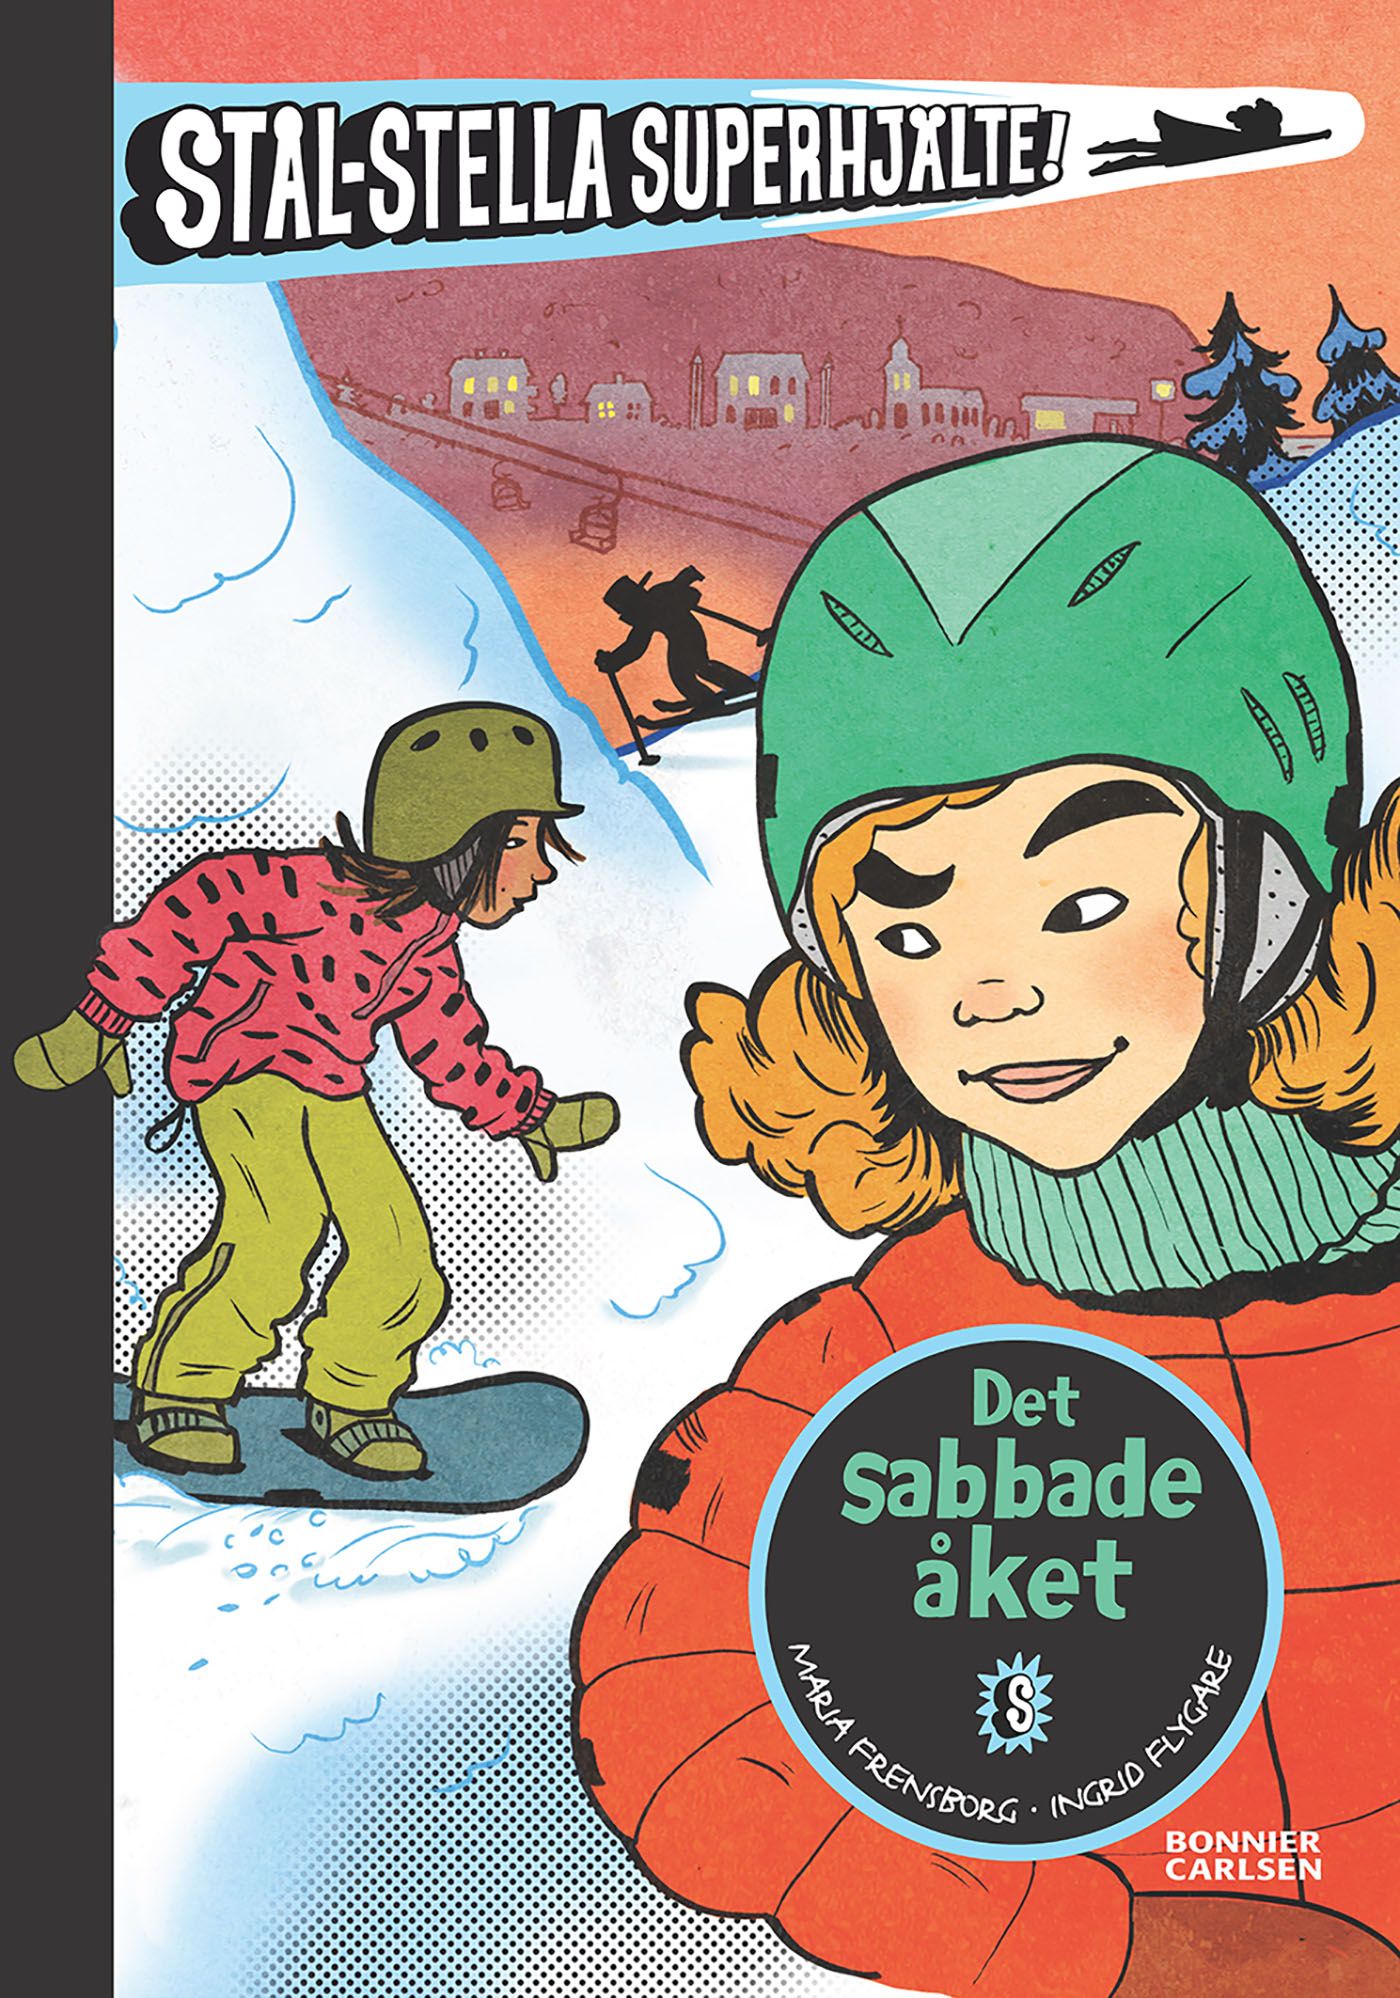 Det sabbade åket, e-bog af Maria Frensborg